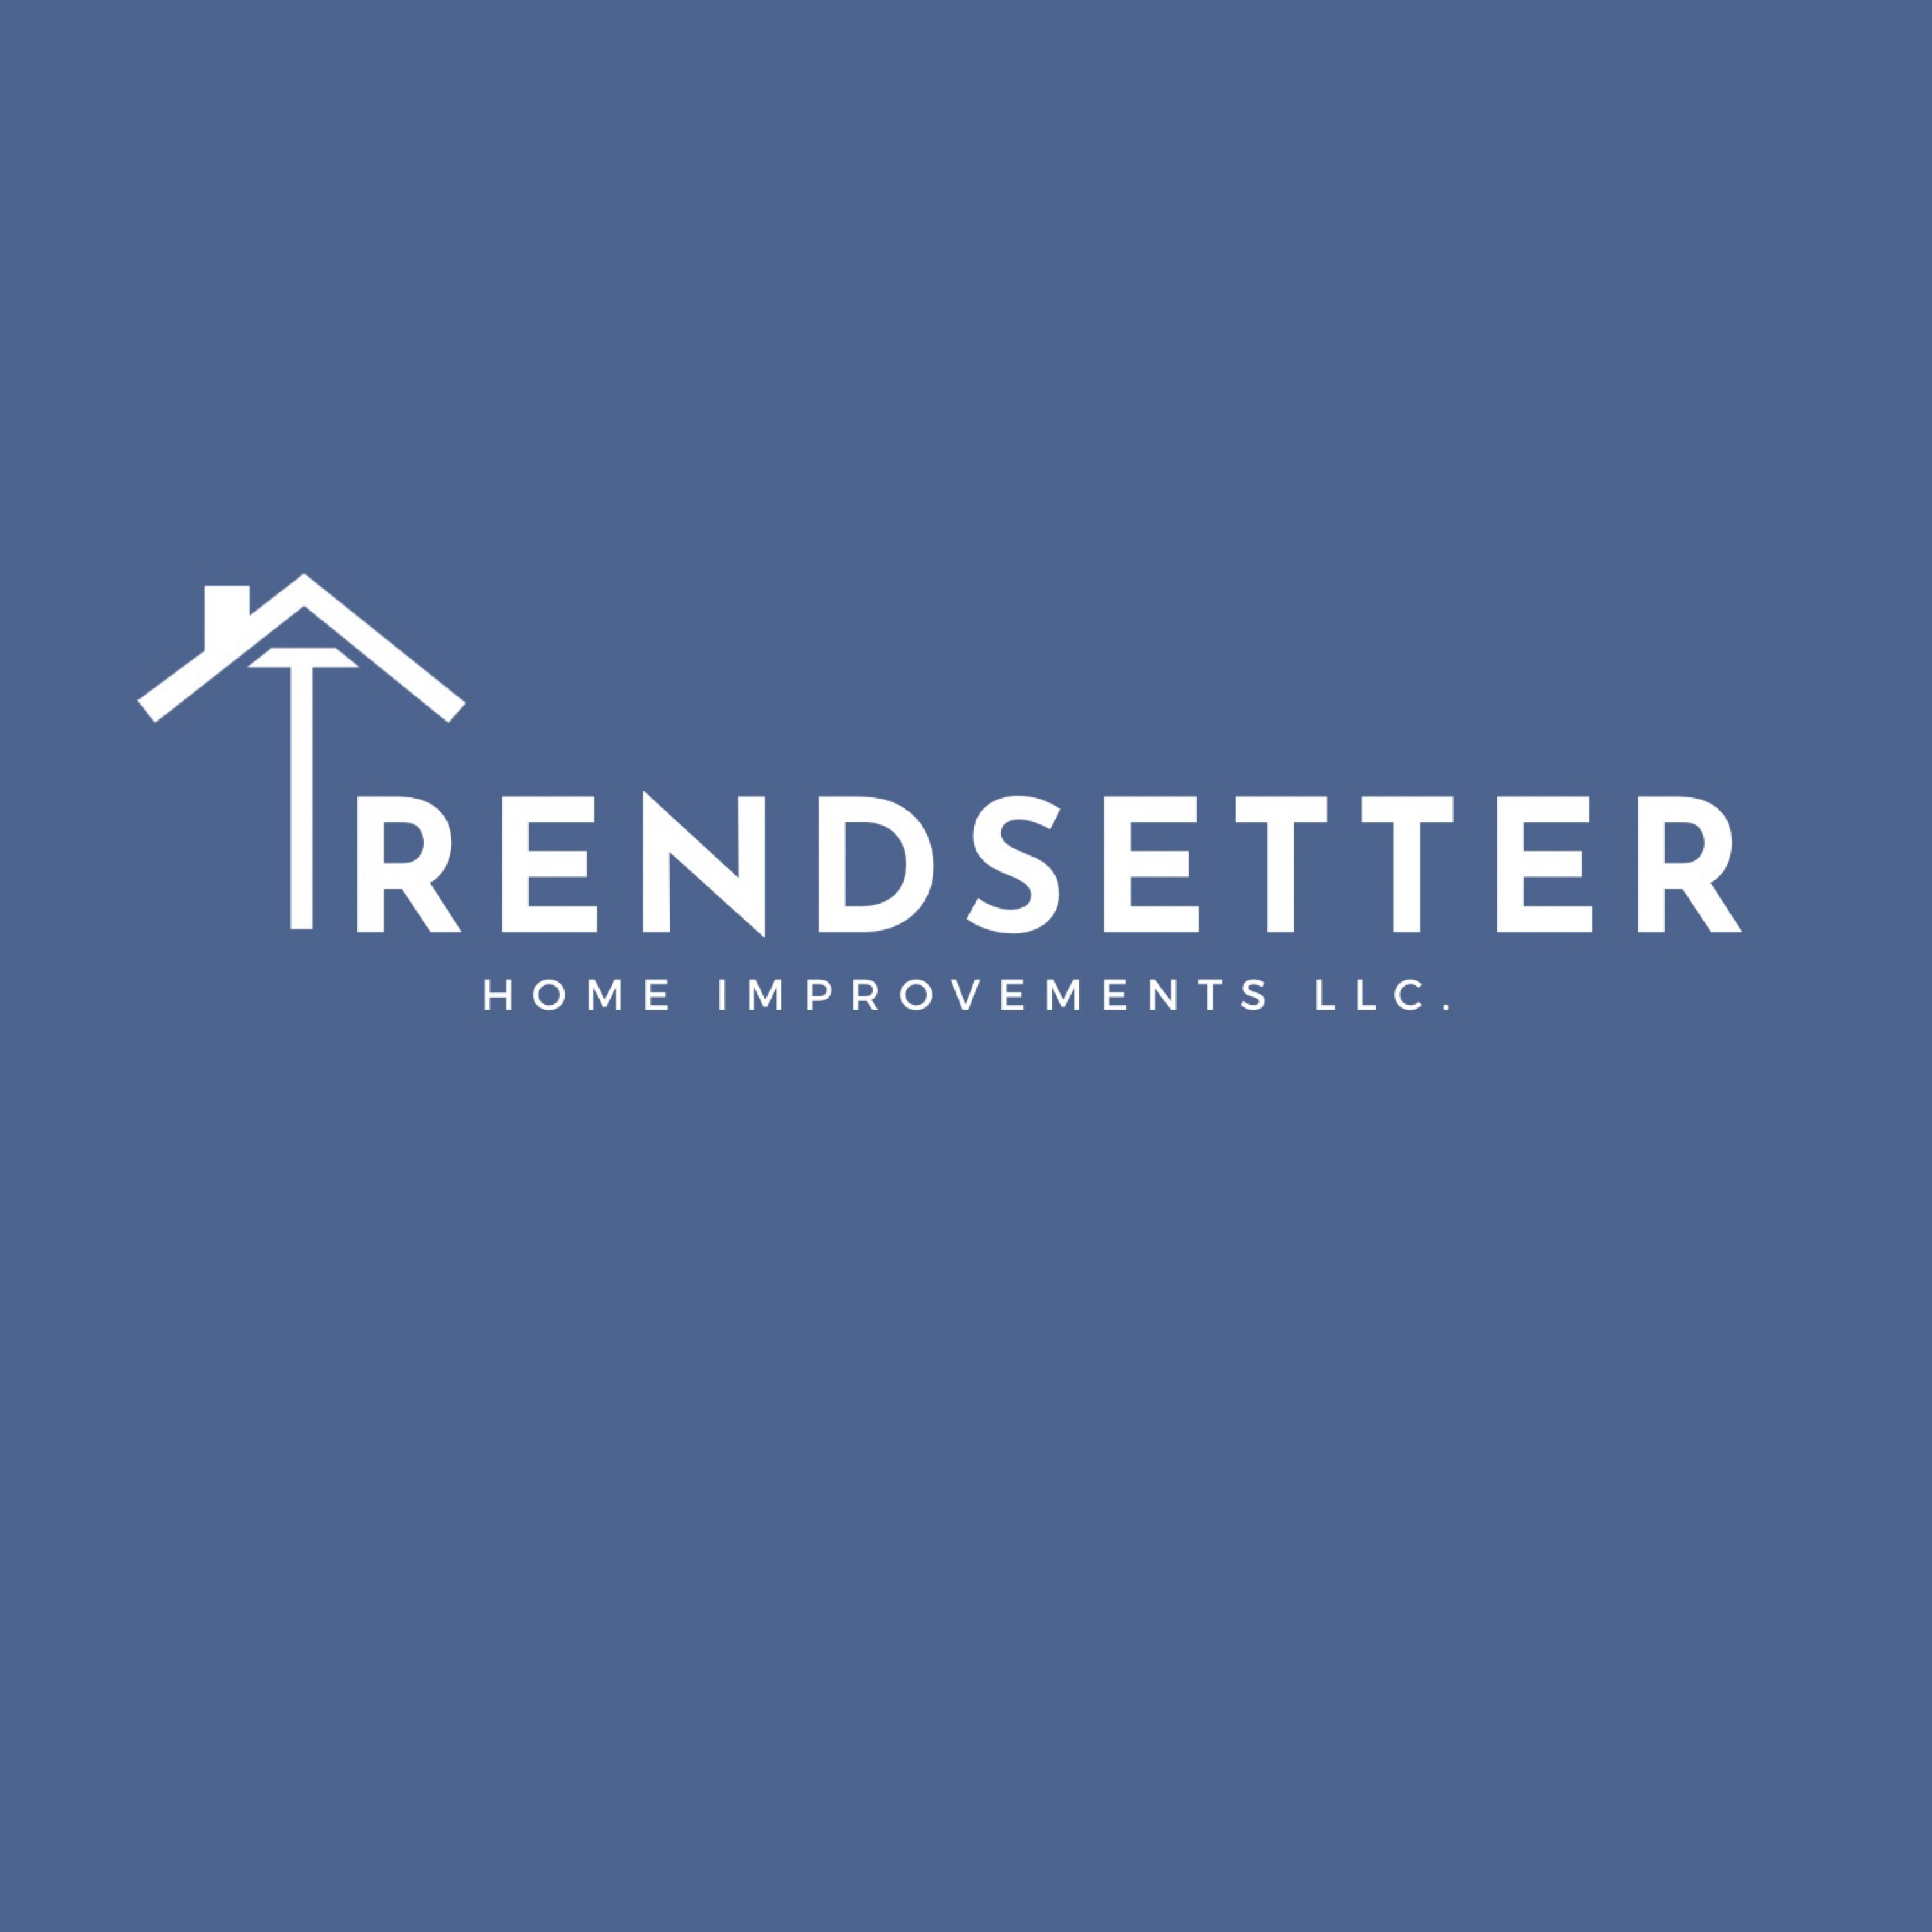 Trendsetter Home Improvements Logo